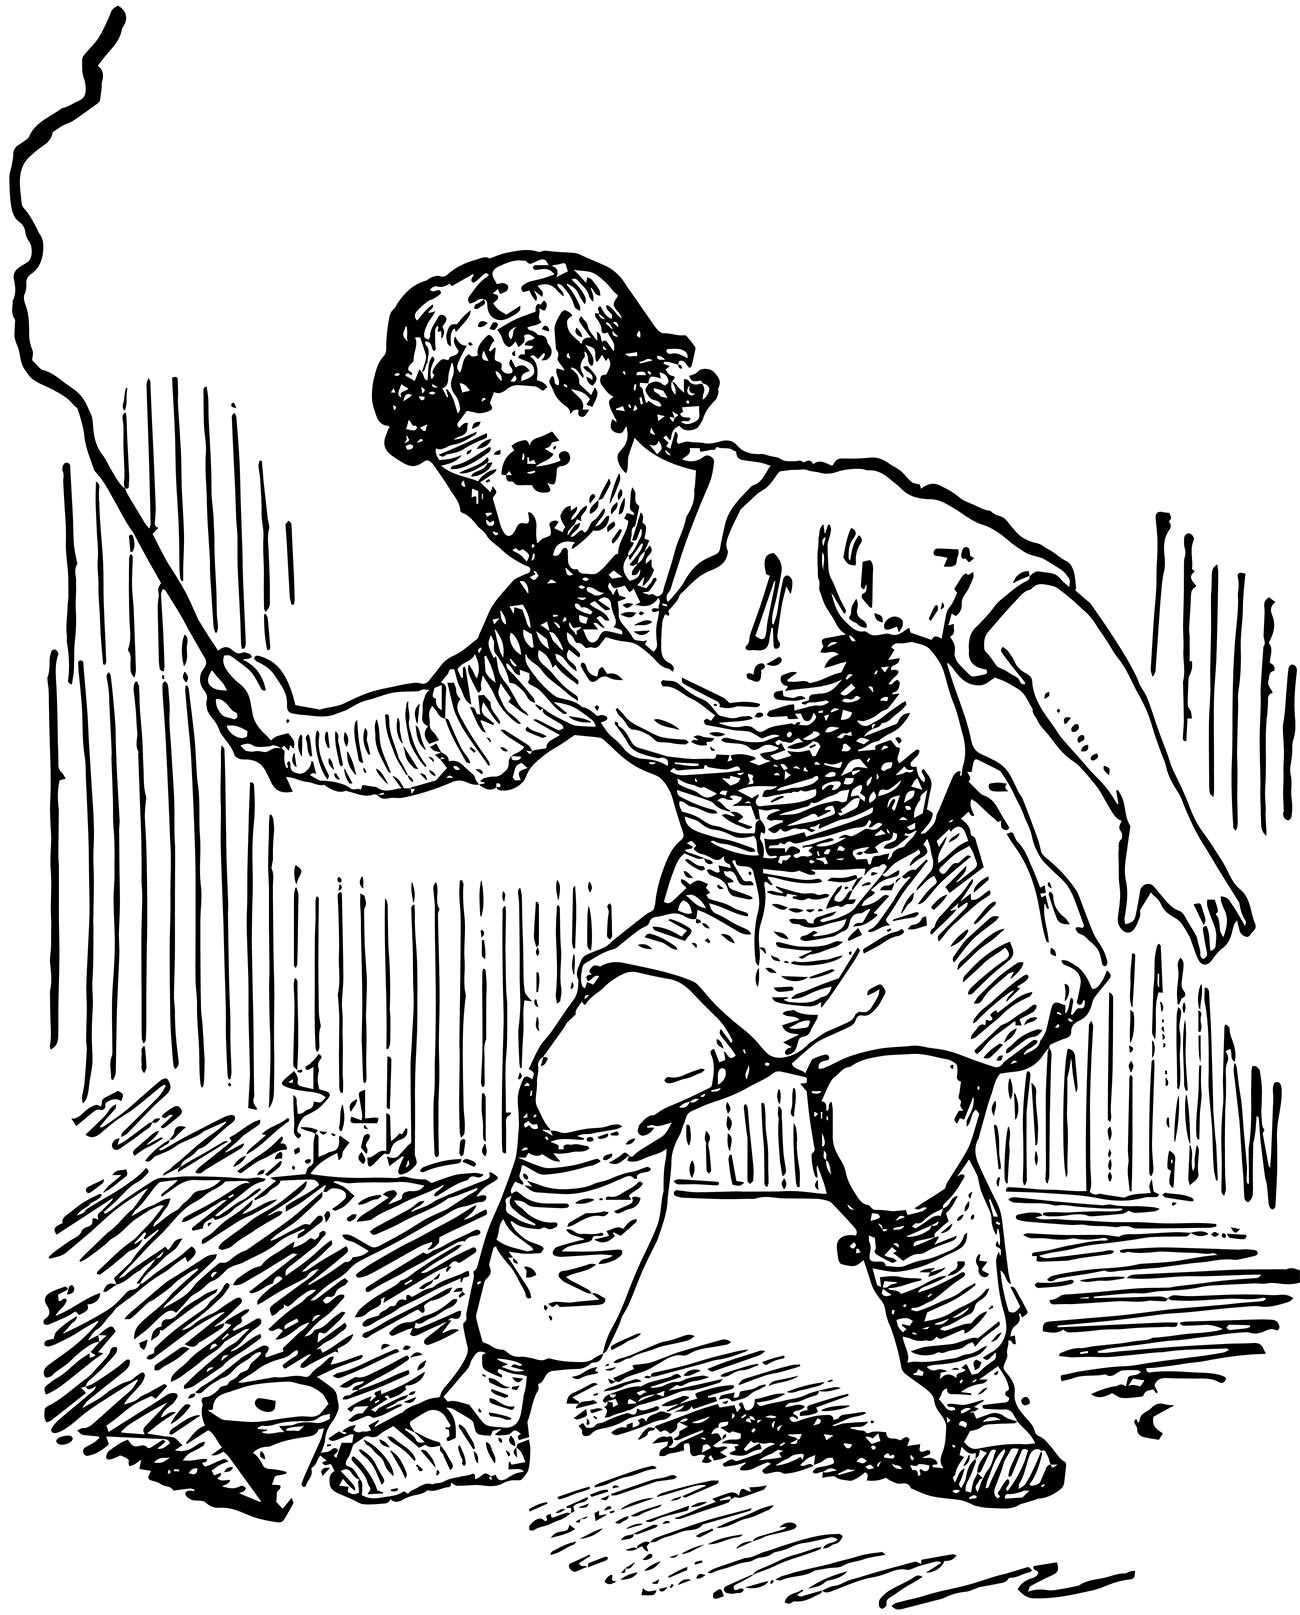 Un bambino gioca con il kubàr
